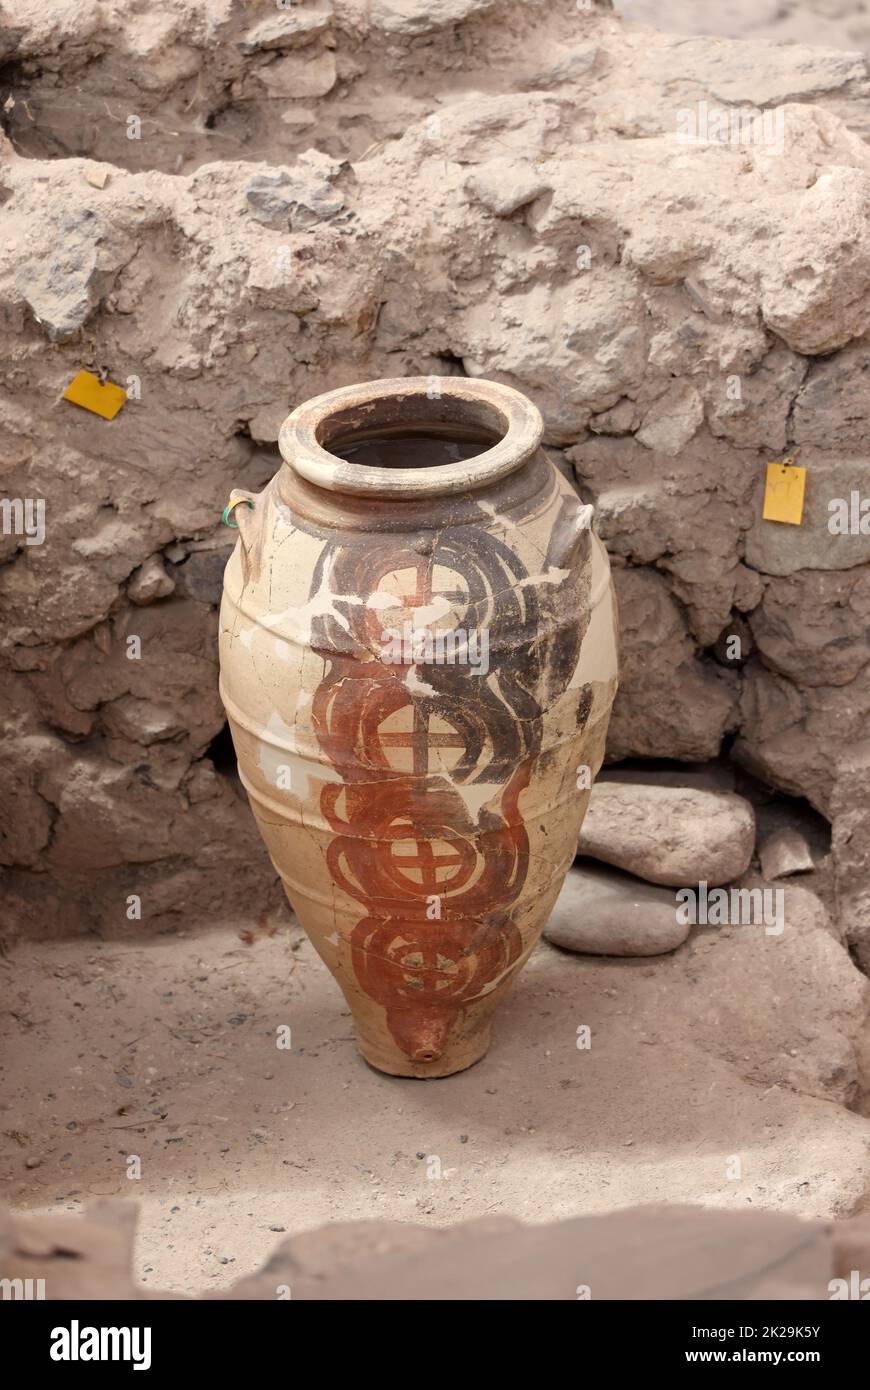 Santorini, Grecia - recupero di ceramiche antiche nella città preistorica di Akrotiri, sito di scavo di un Bronzo minoico Foto Stock